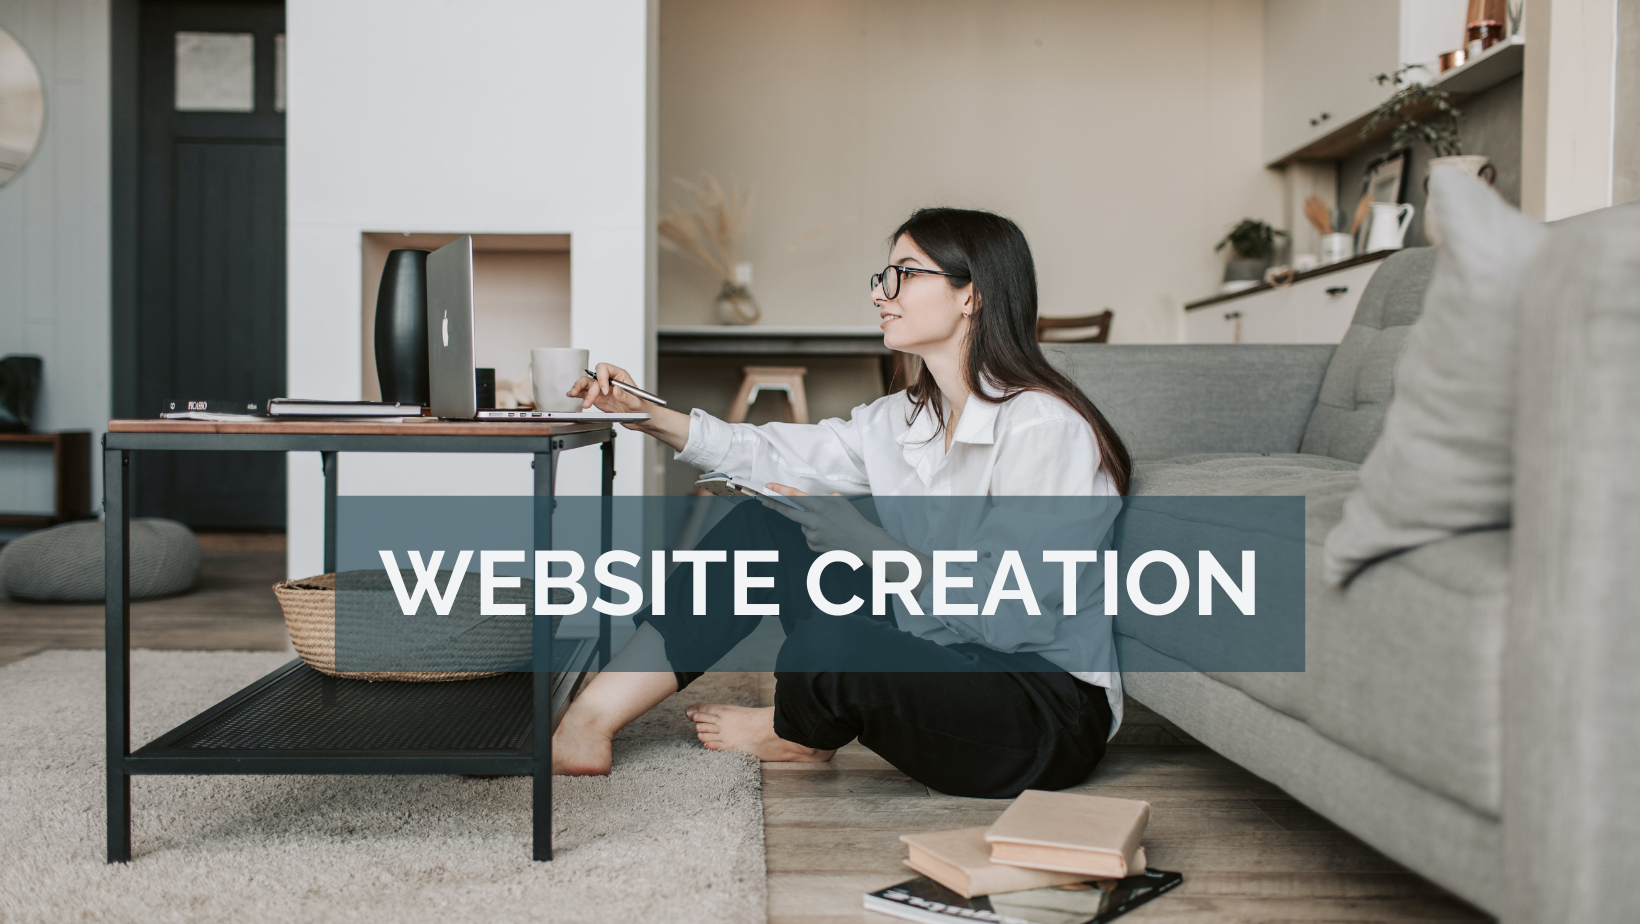 WEBSITE CREATION CHERYL HART